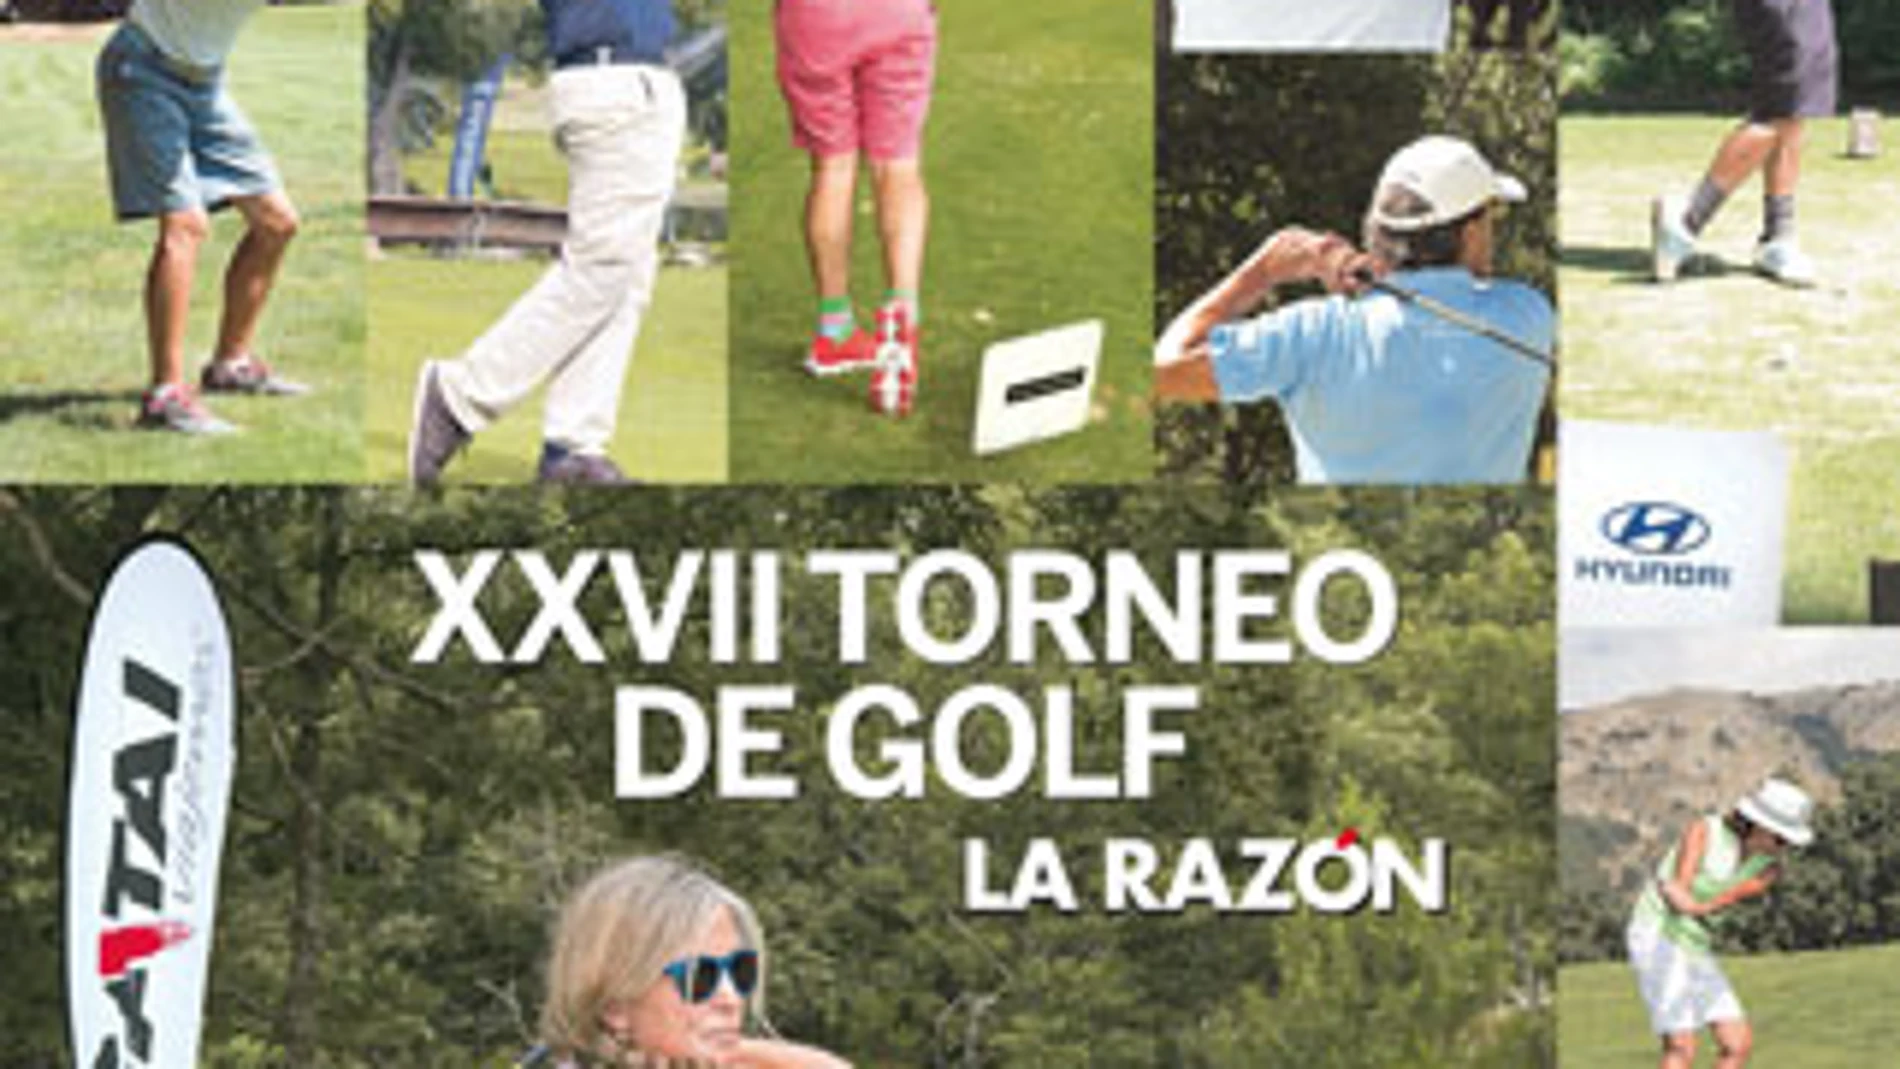 XXVII Torneo de Golf La Razón